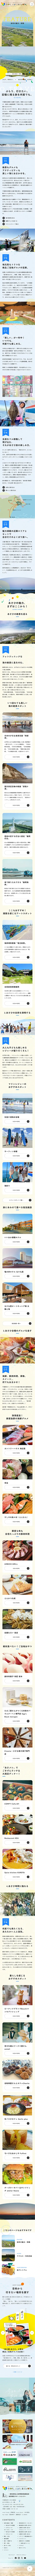 千葉県旭市観光サイト｜今日も、ぶらり、あさひ日和。のモバイルサイズのAboutページ画像